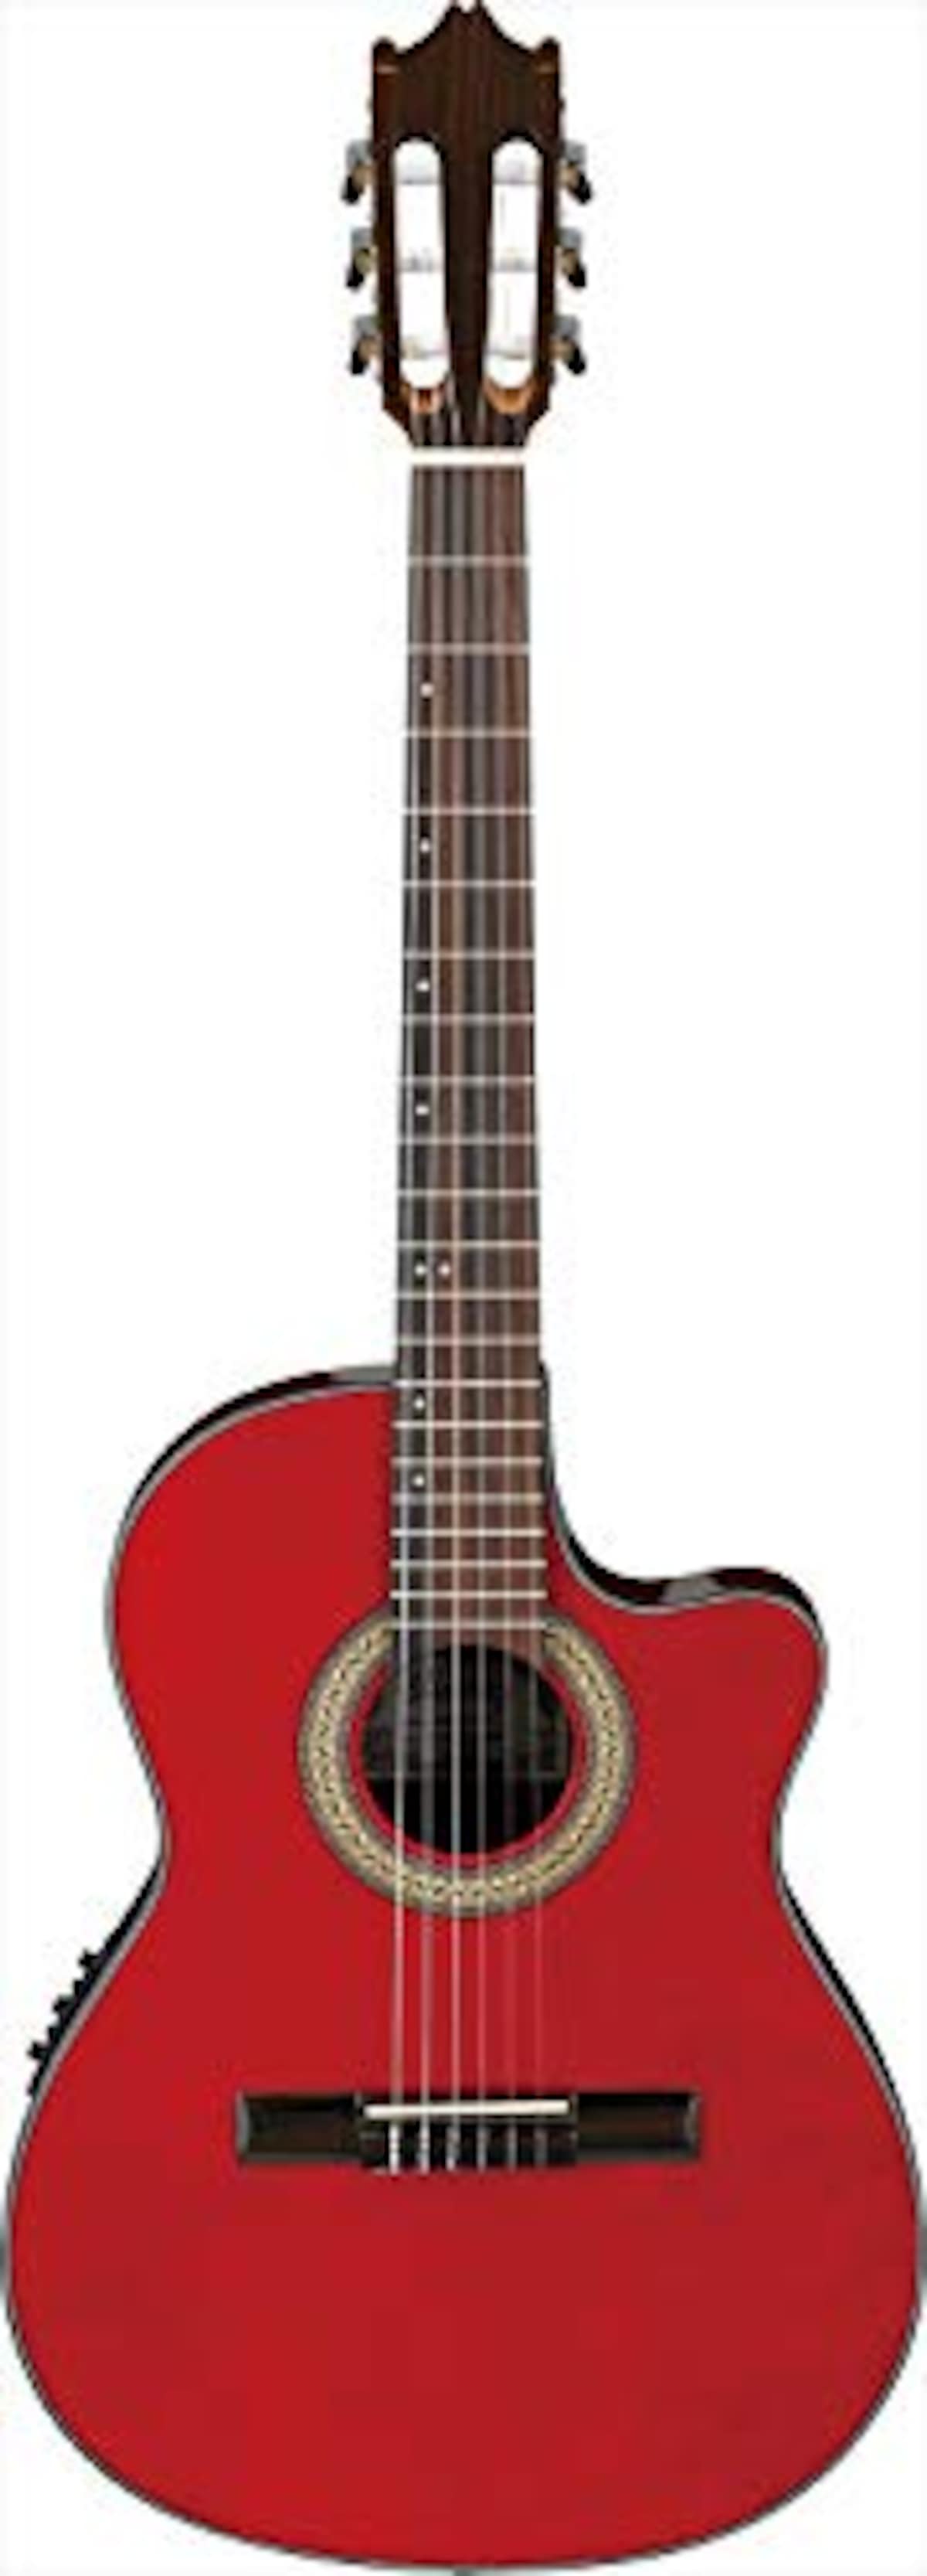 Ibanez(アイバニーズ)のボディ厚約70mmの薄胴エレガットギターGA30TCE